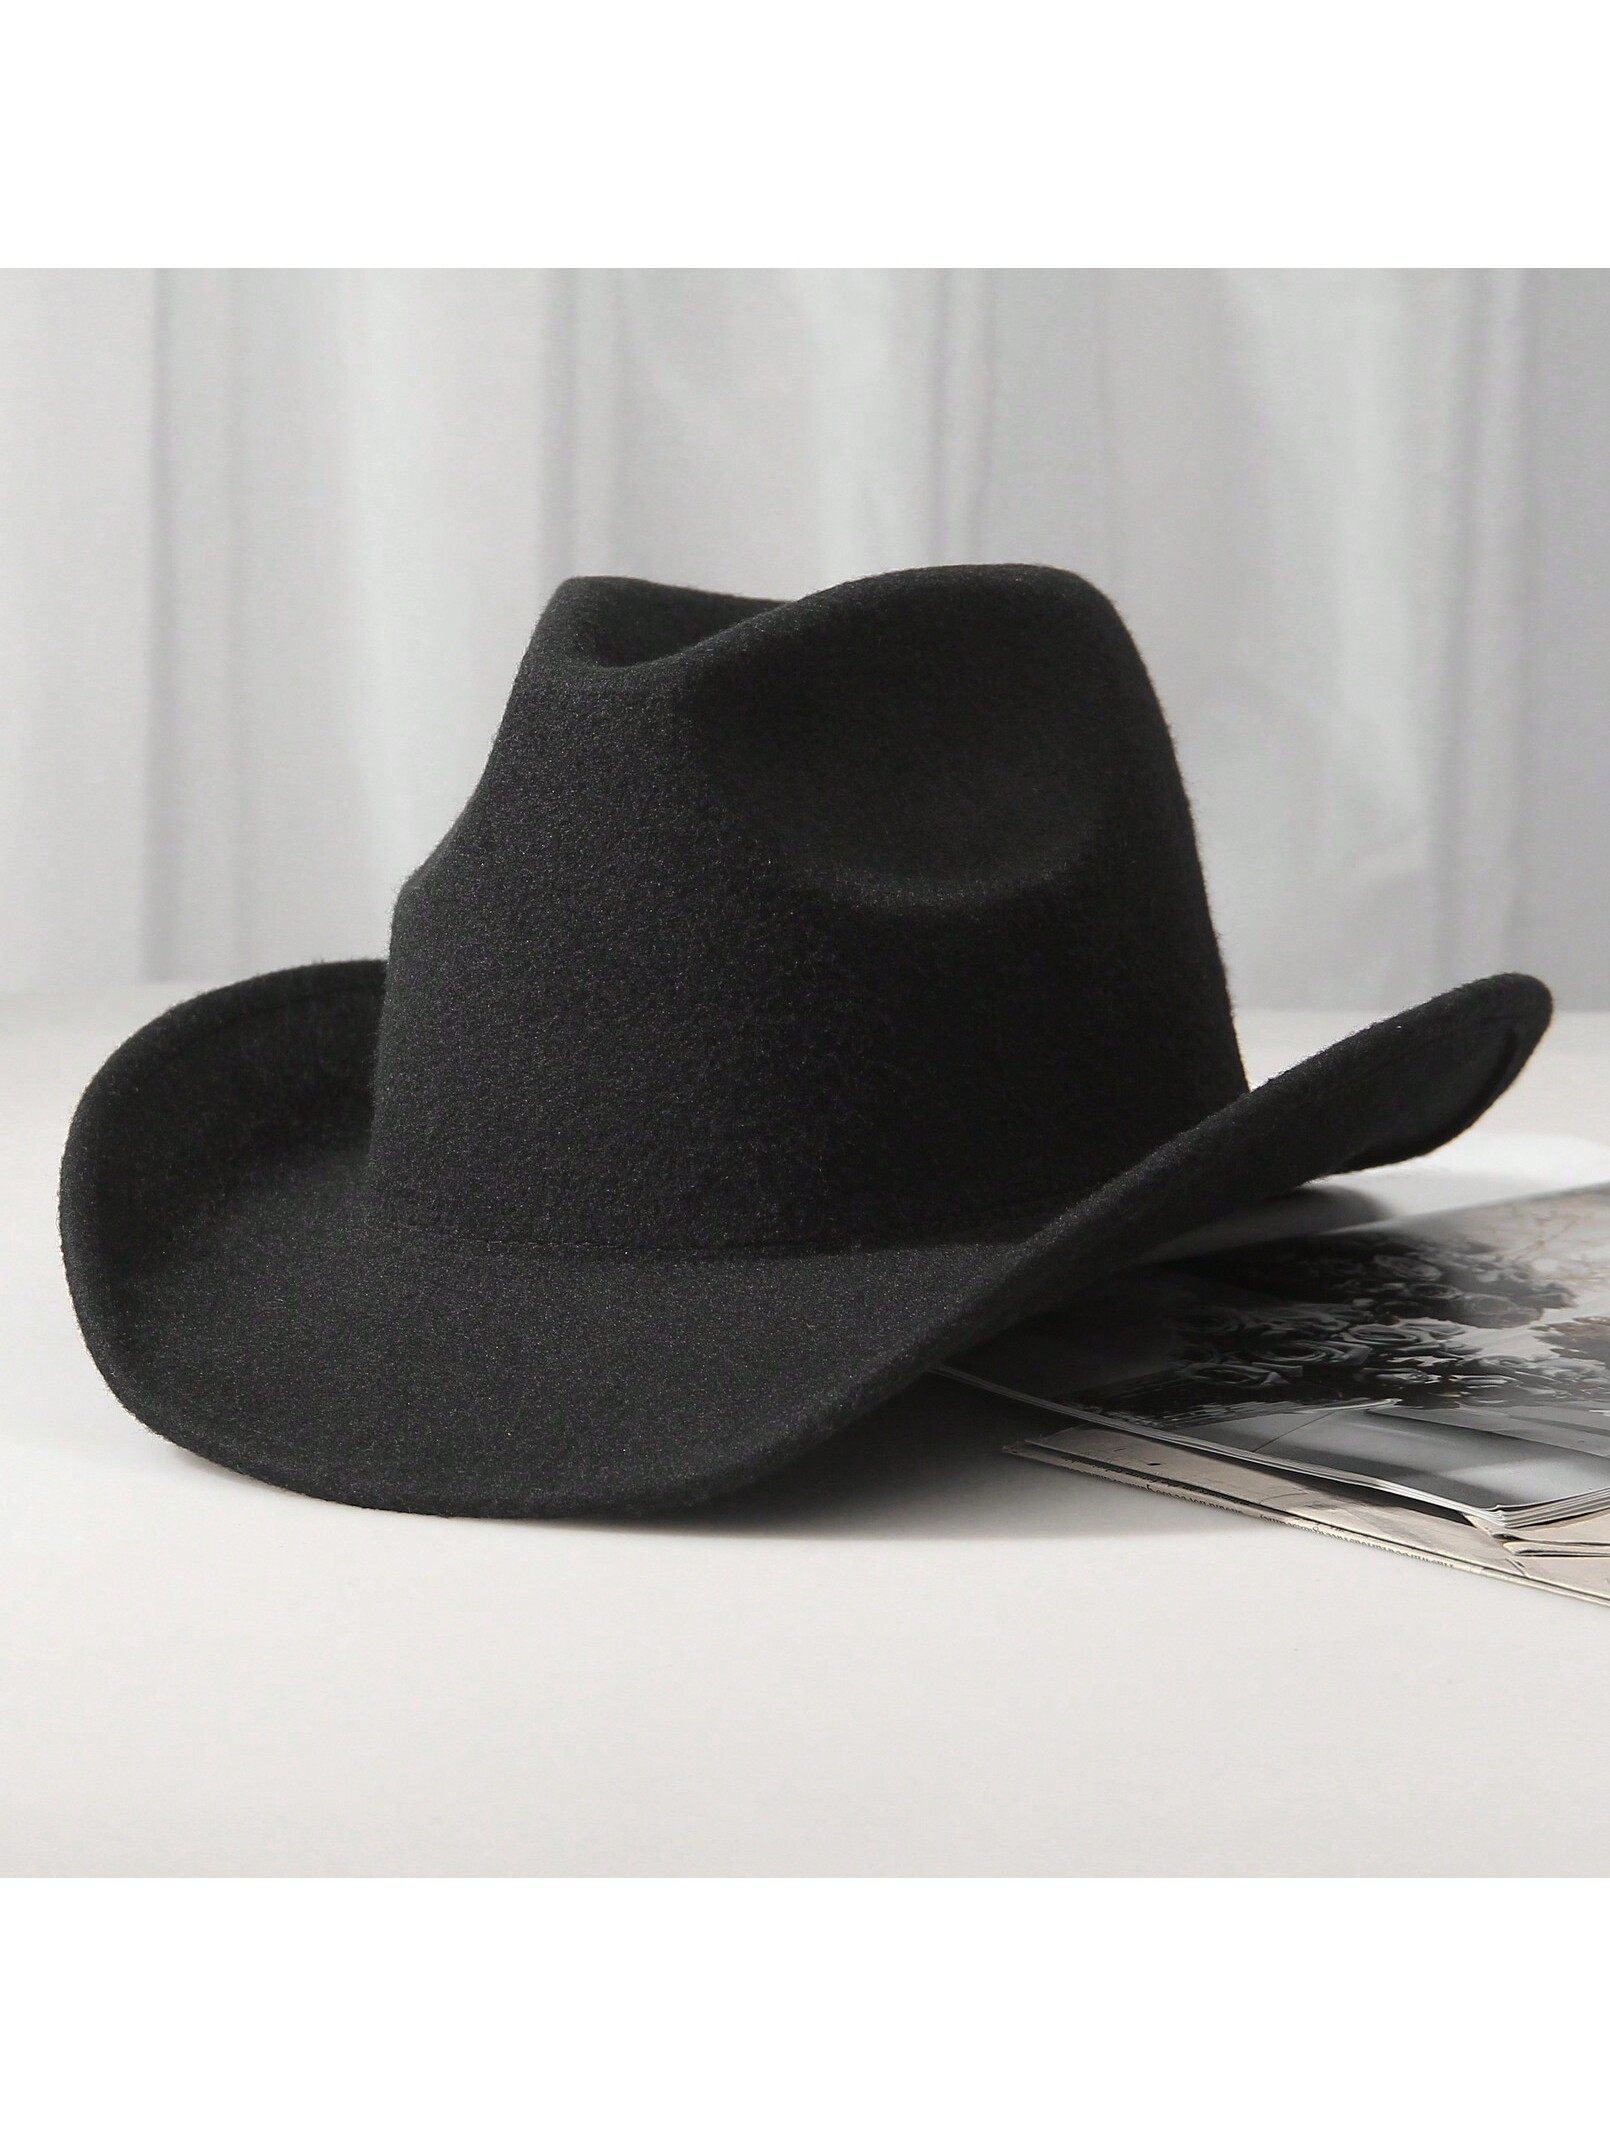 1шт унисекс шерстяная ковбойская шляпа-ковбойская шляпа в западном стиле черная ковбойская шляпа, черный 20 шт мини аксессуары мини ковбойская шляпа крошечная ковбойская шляпа декоративная мини шляпа мини домашний реквизит